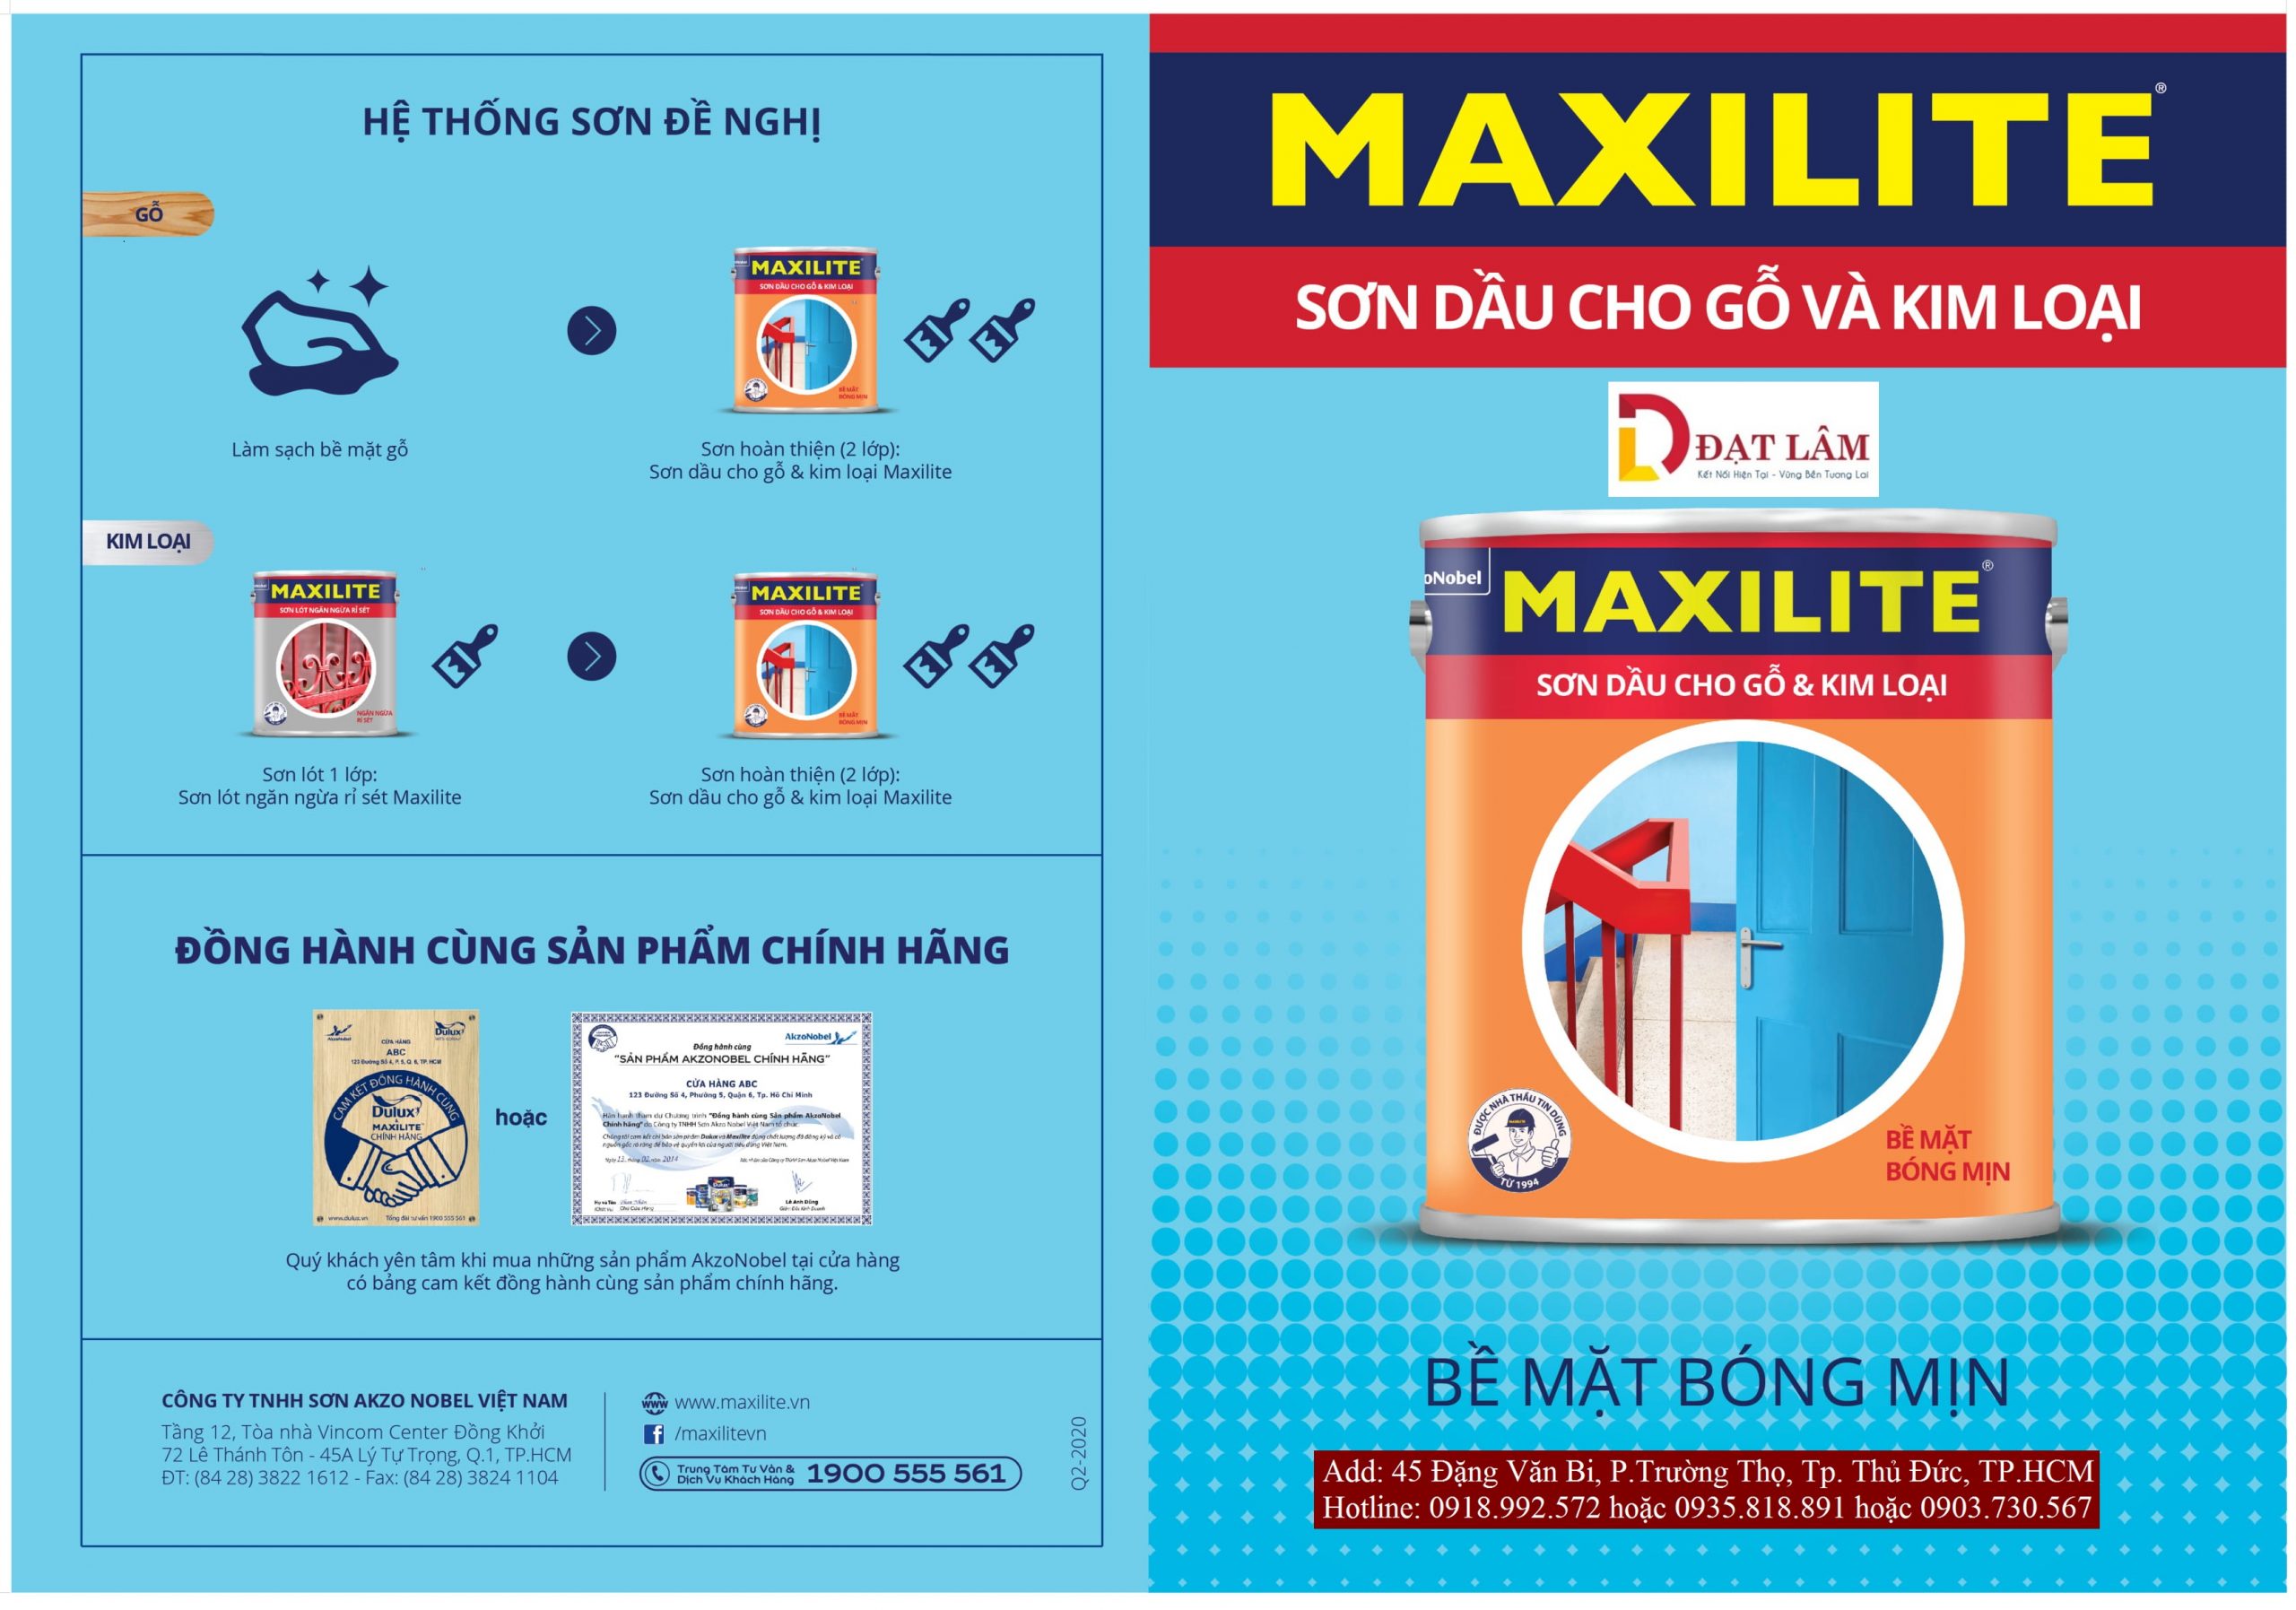 Sơn dầu Maxilite: Với sơn dầu Maxilite, bạn sẽ có được một bề mặt sơn mịn màng và lâu bền nhất có thể. Hãy tham khảo thông tin và hình ảnh để tìm hiểu thêm về sản phẩm này.